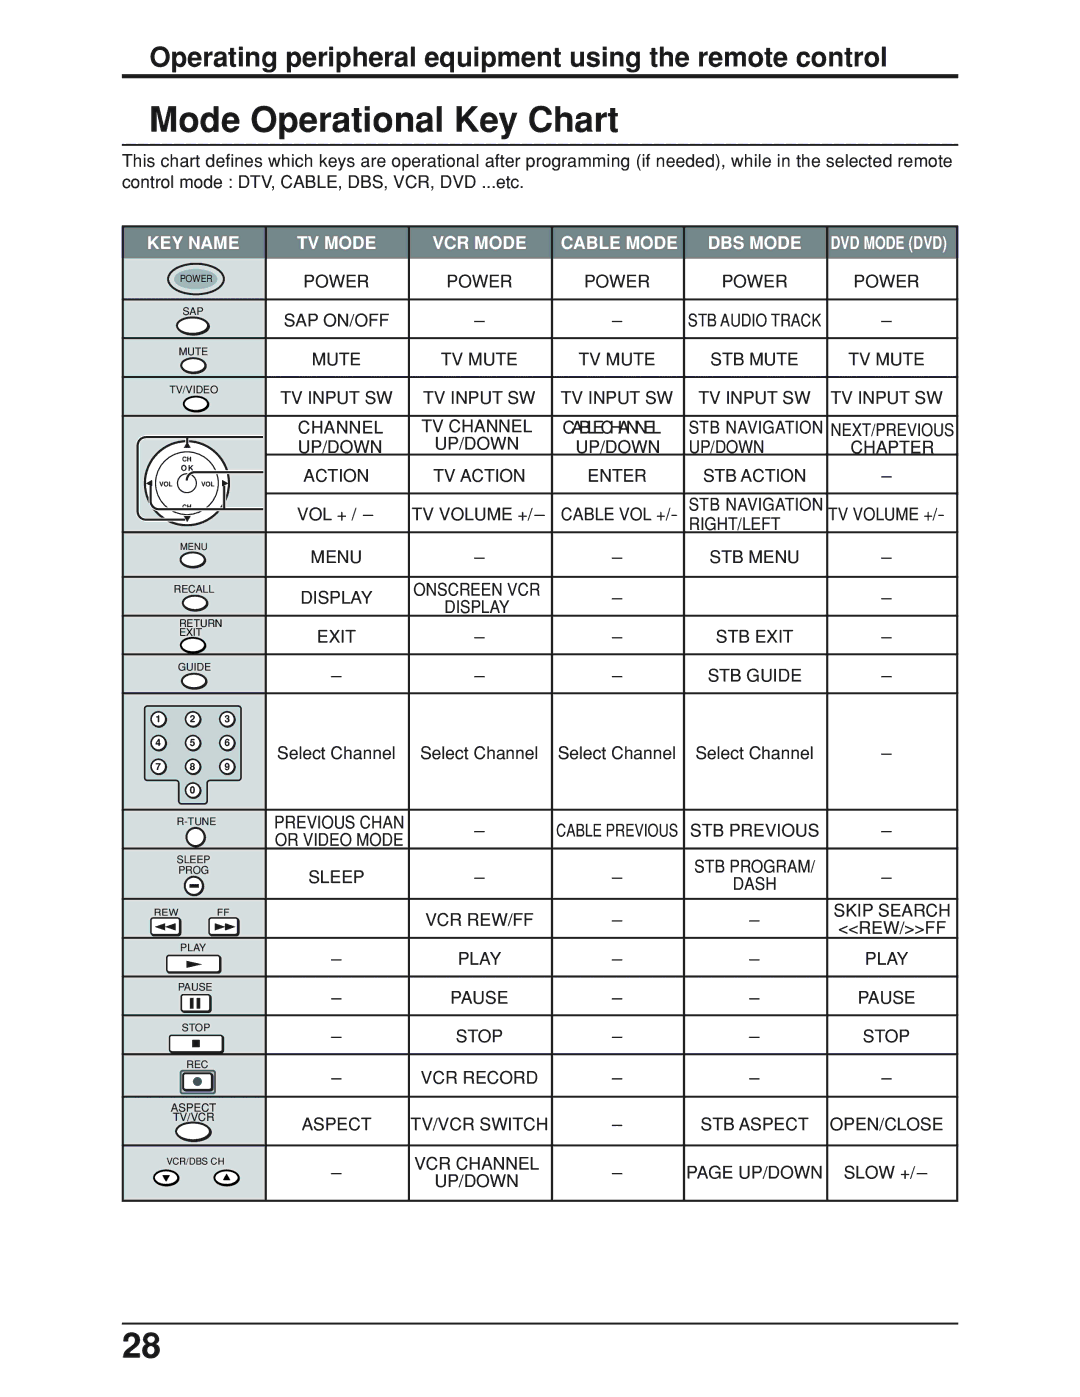 Panasonic TC-19LE50, TC 19LX50 manual Mode Operational Key Chart 